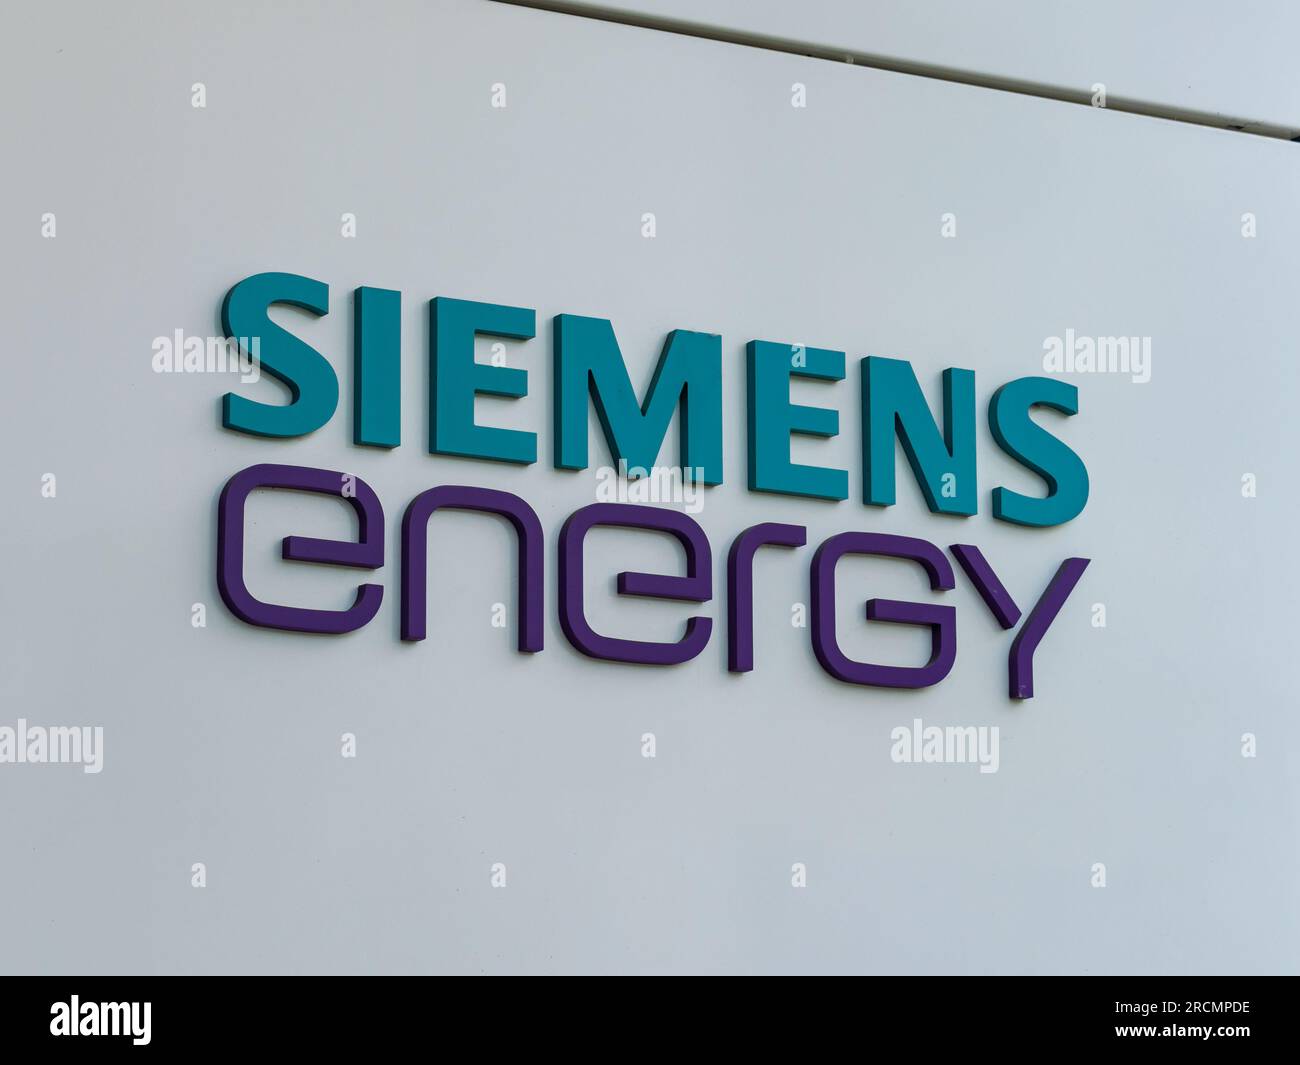 Nahaufnahme des Siemens Energy Logos. Technologie- und Ingenieurunternehmen, ein großer Arbeitgeber in der Branche. Symbol an der Fassade des Gebäudes. Stockfoto